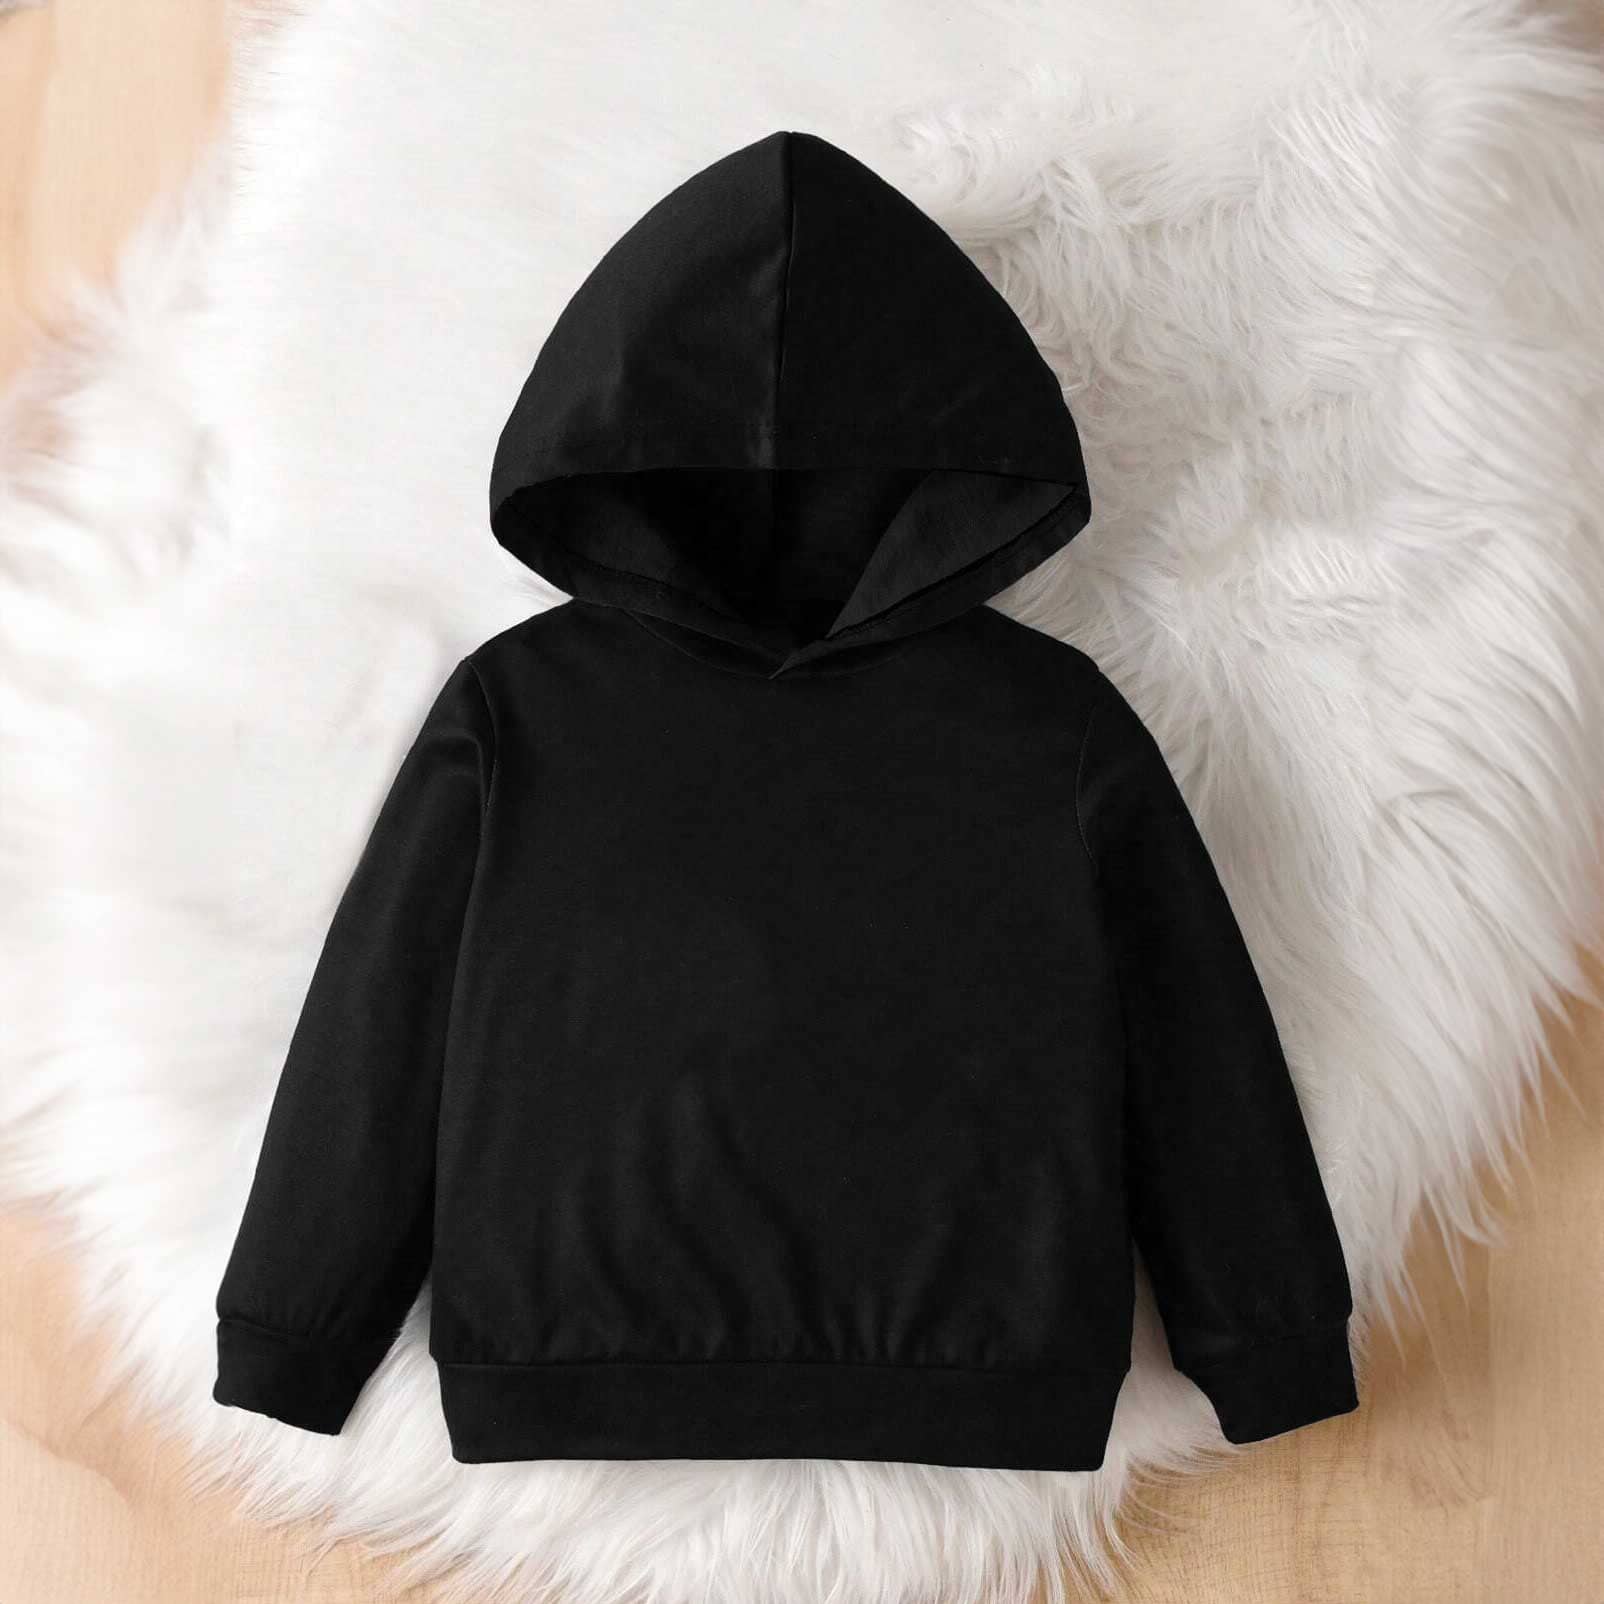 Rabbit Skins Kid's Solid Design Fleece Pullover Hoodie Boy's Pullover Hoodie Minhas Garments Black 2 Years 